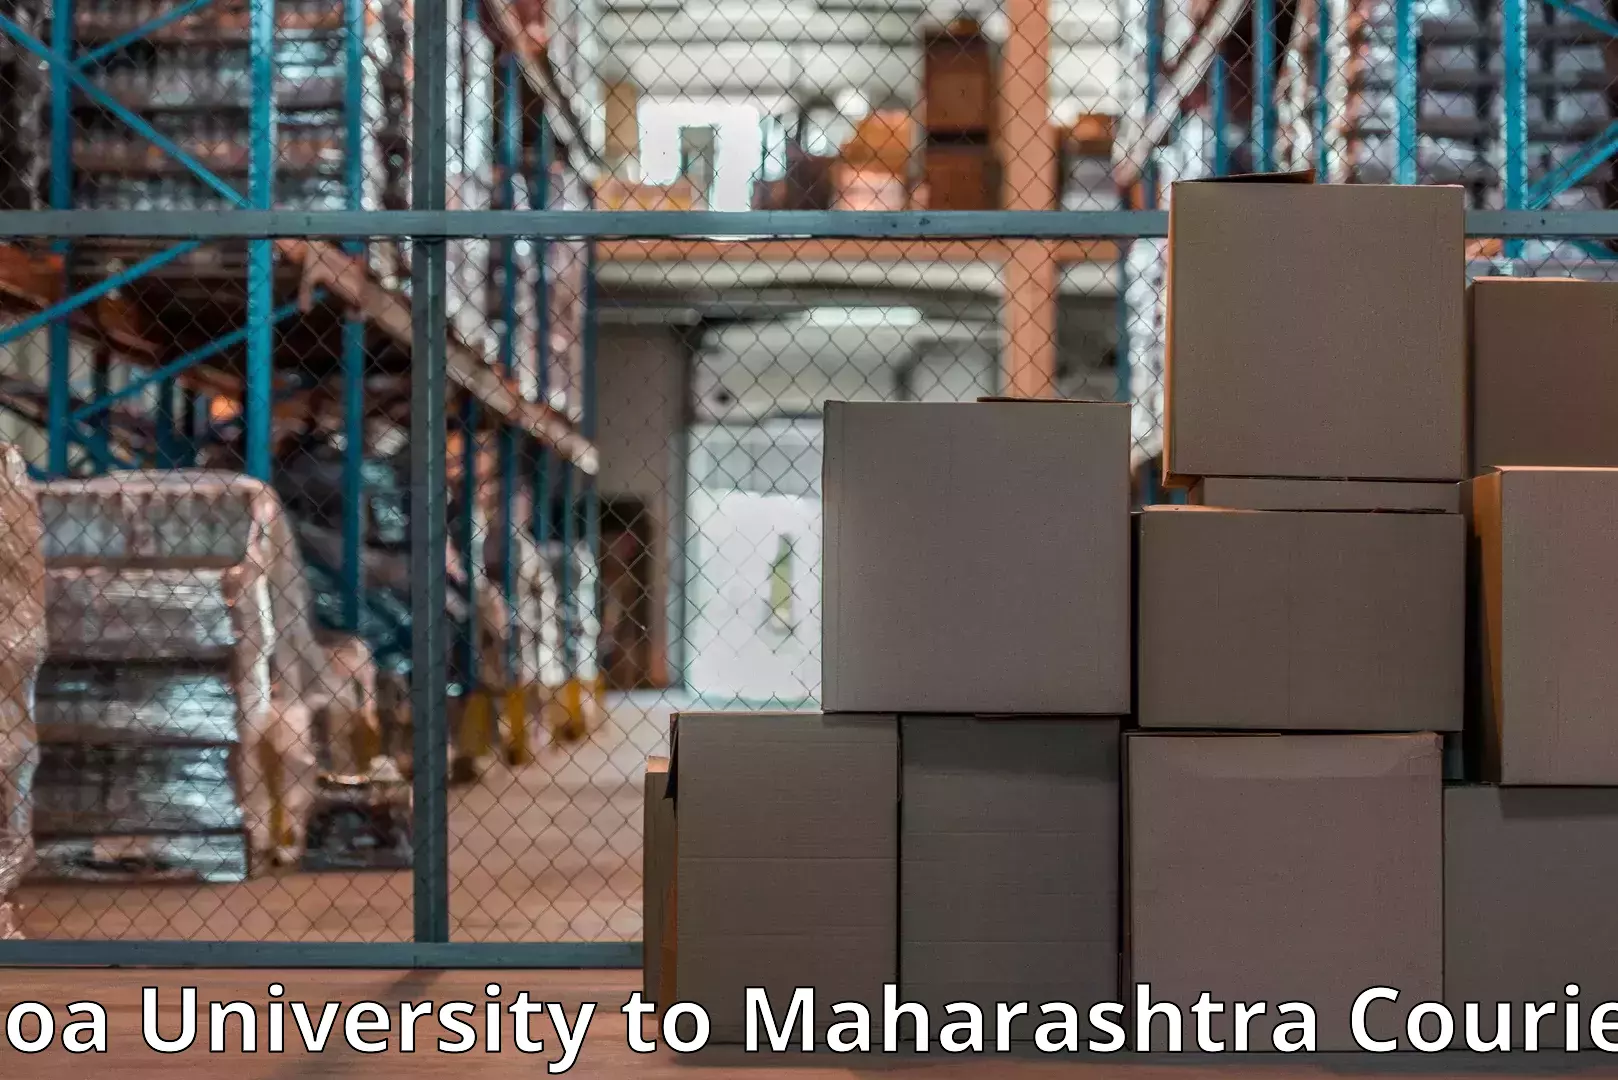 Professional moving company Goa University to Sindewahi